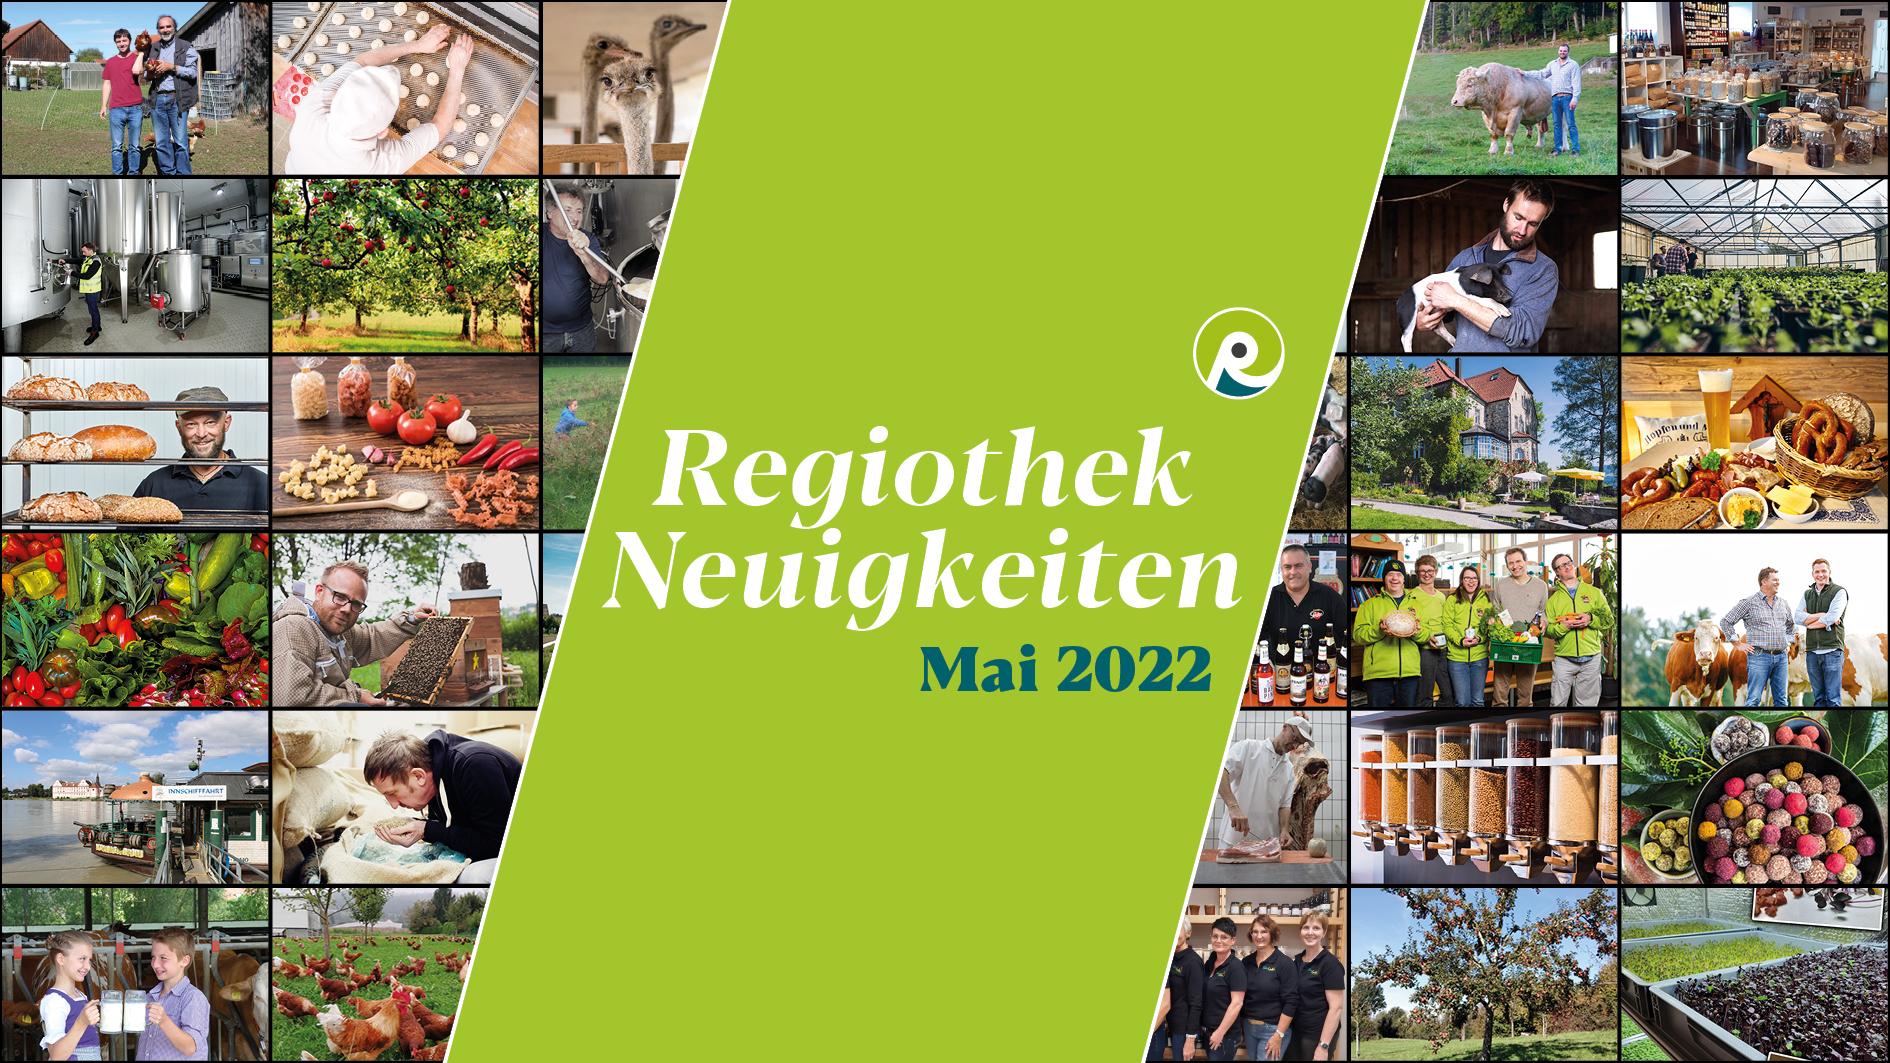 Text "Regiothek Neuigkeiten Mai 2022" auf stilisiertem Hintergrund